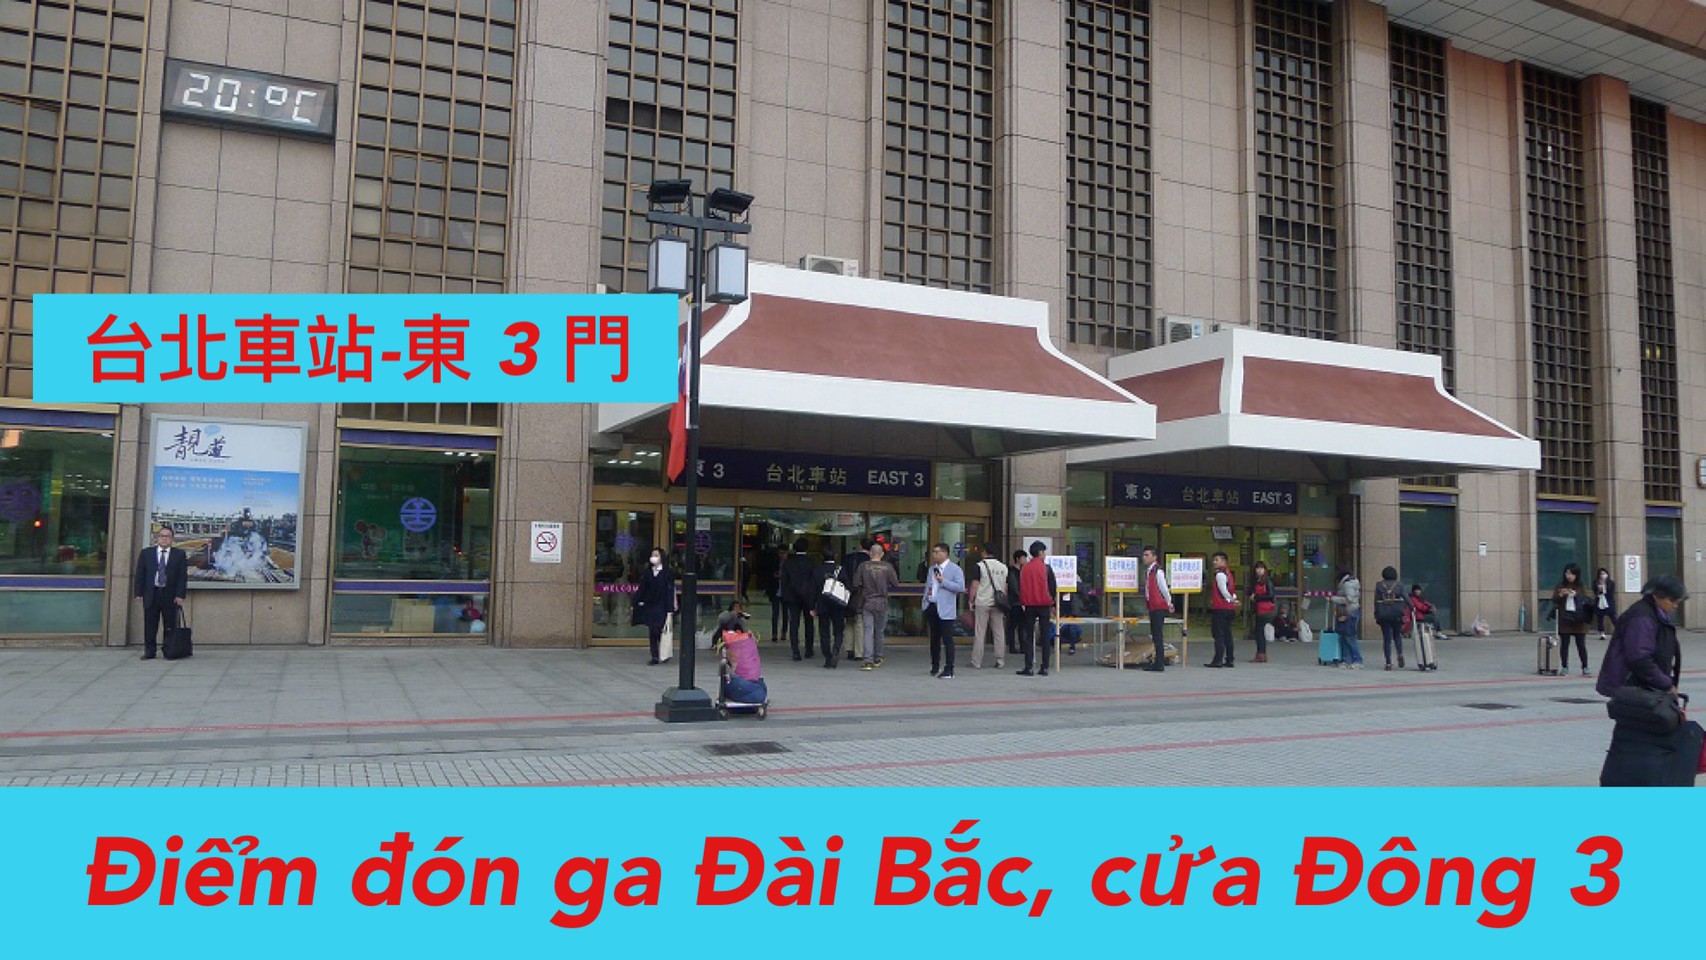 7:30 Đón ga Đài Bắc East 3 (台北火車站 )